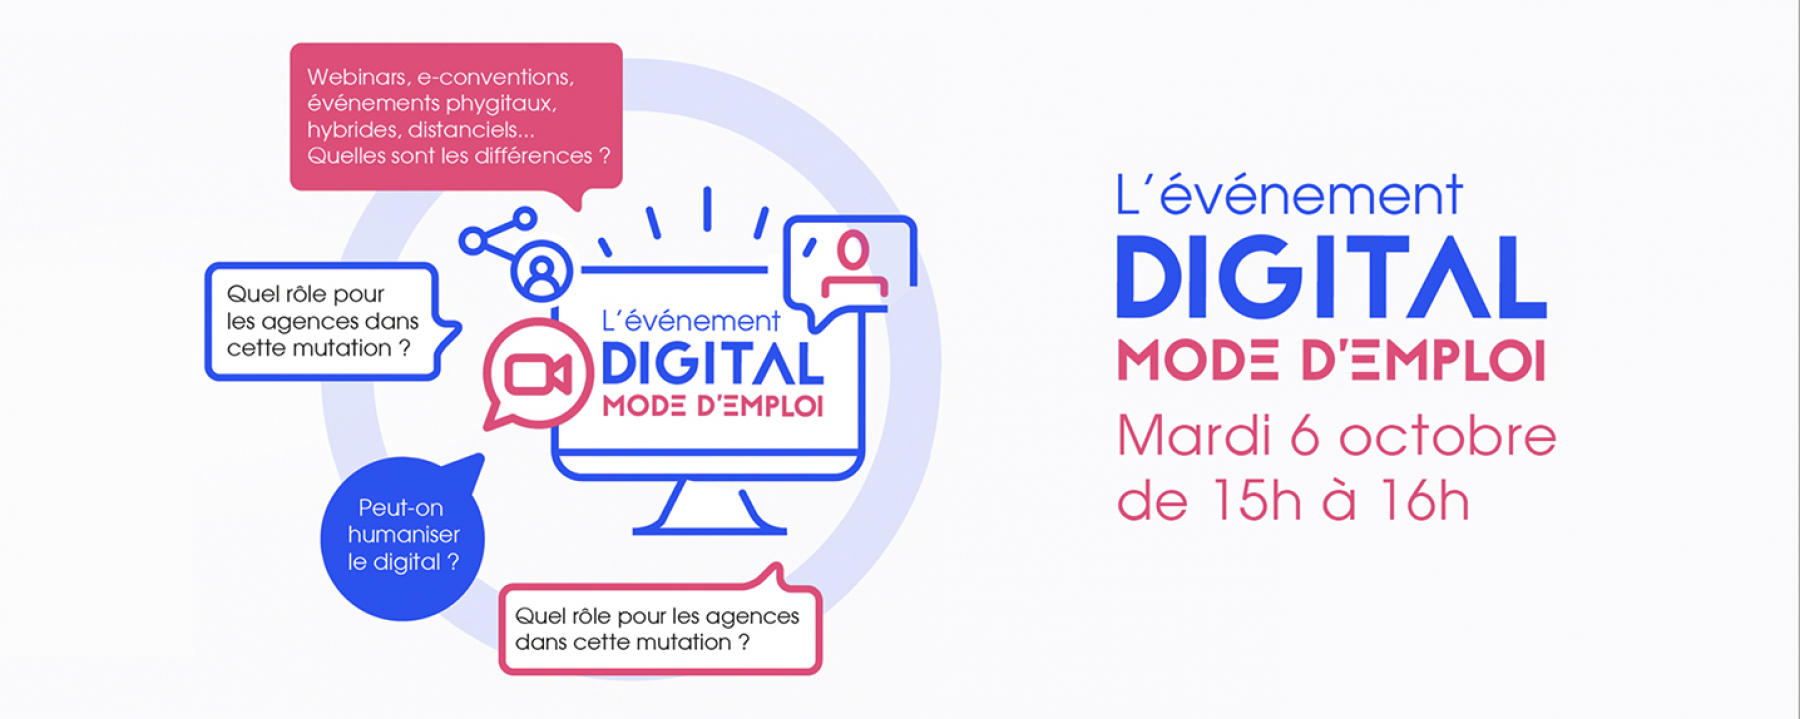 L'événement digital mode d'emploi, un événement virtuel organisé par LEVENEMENT